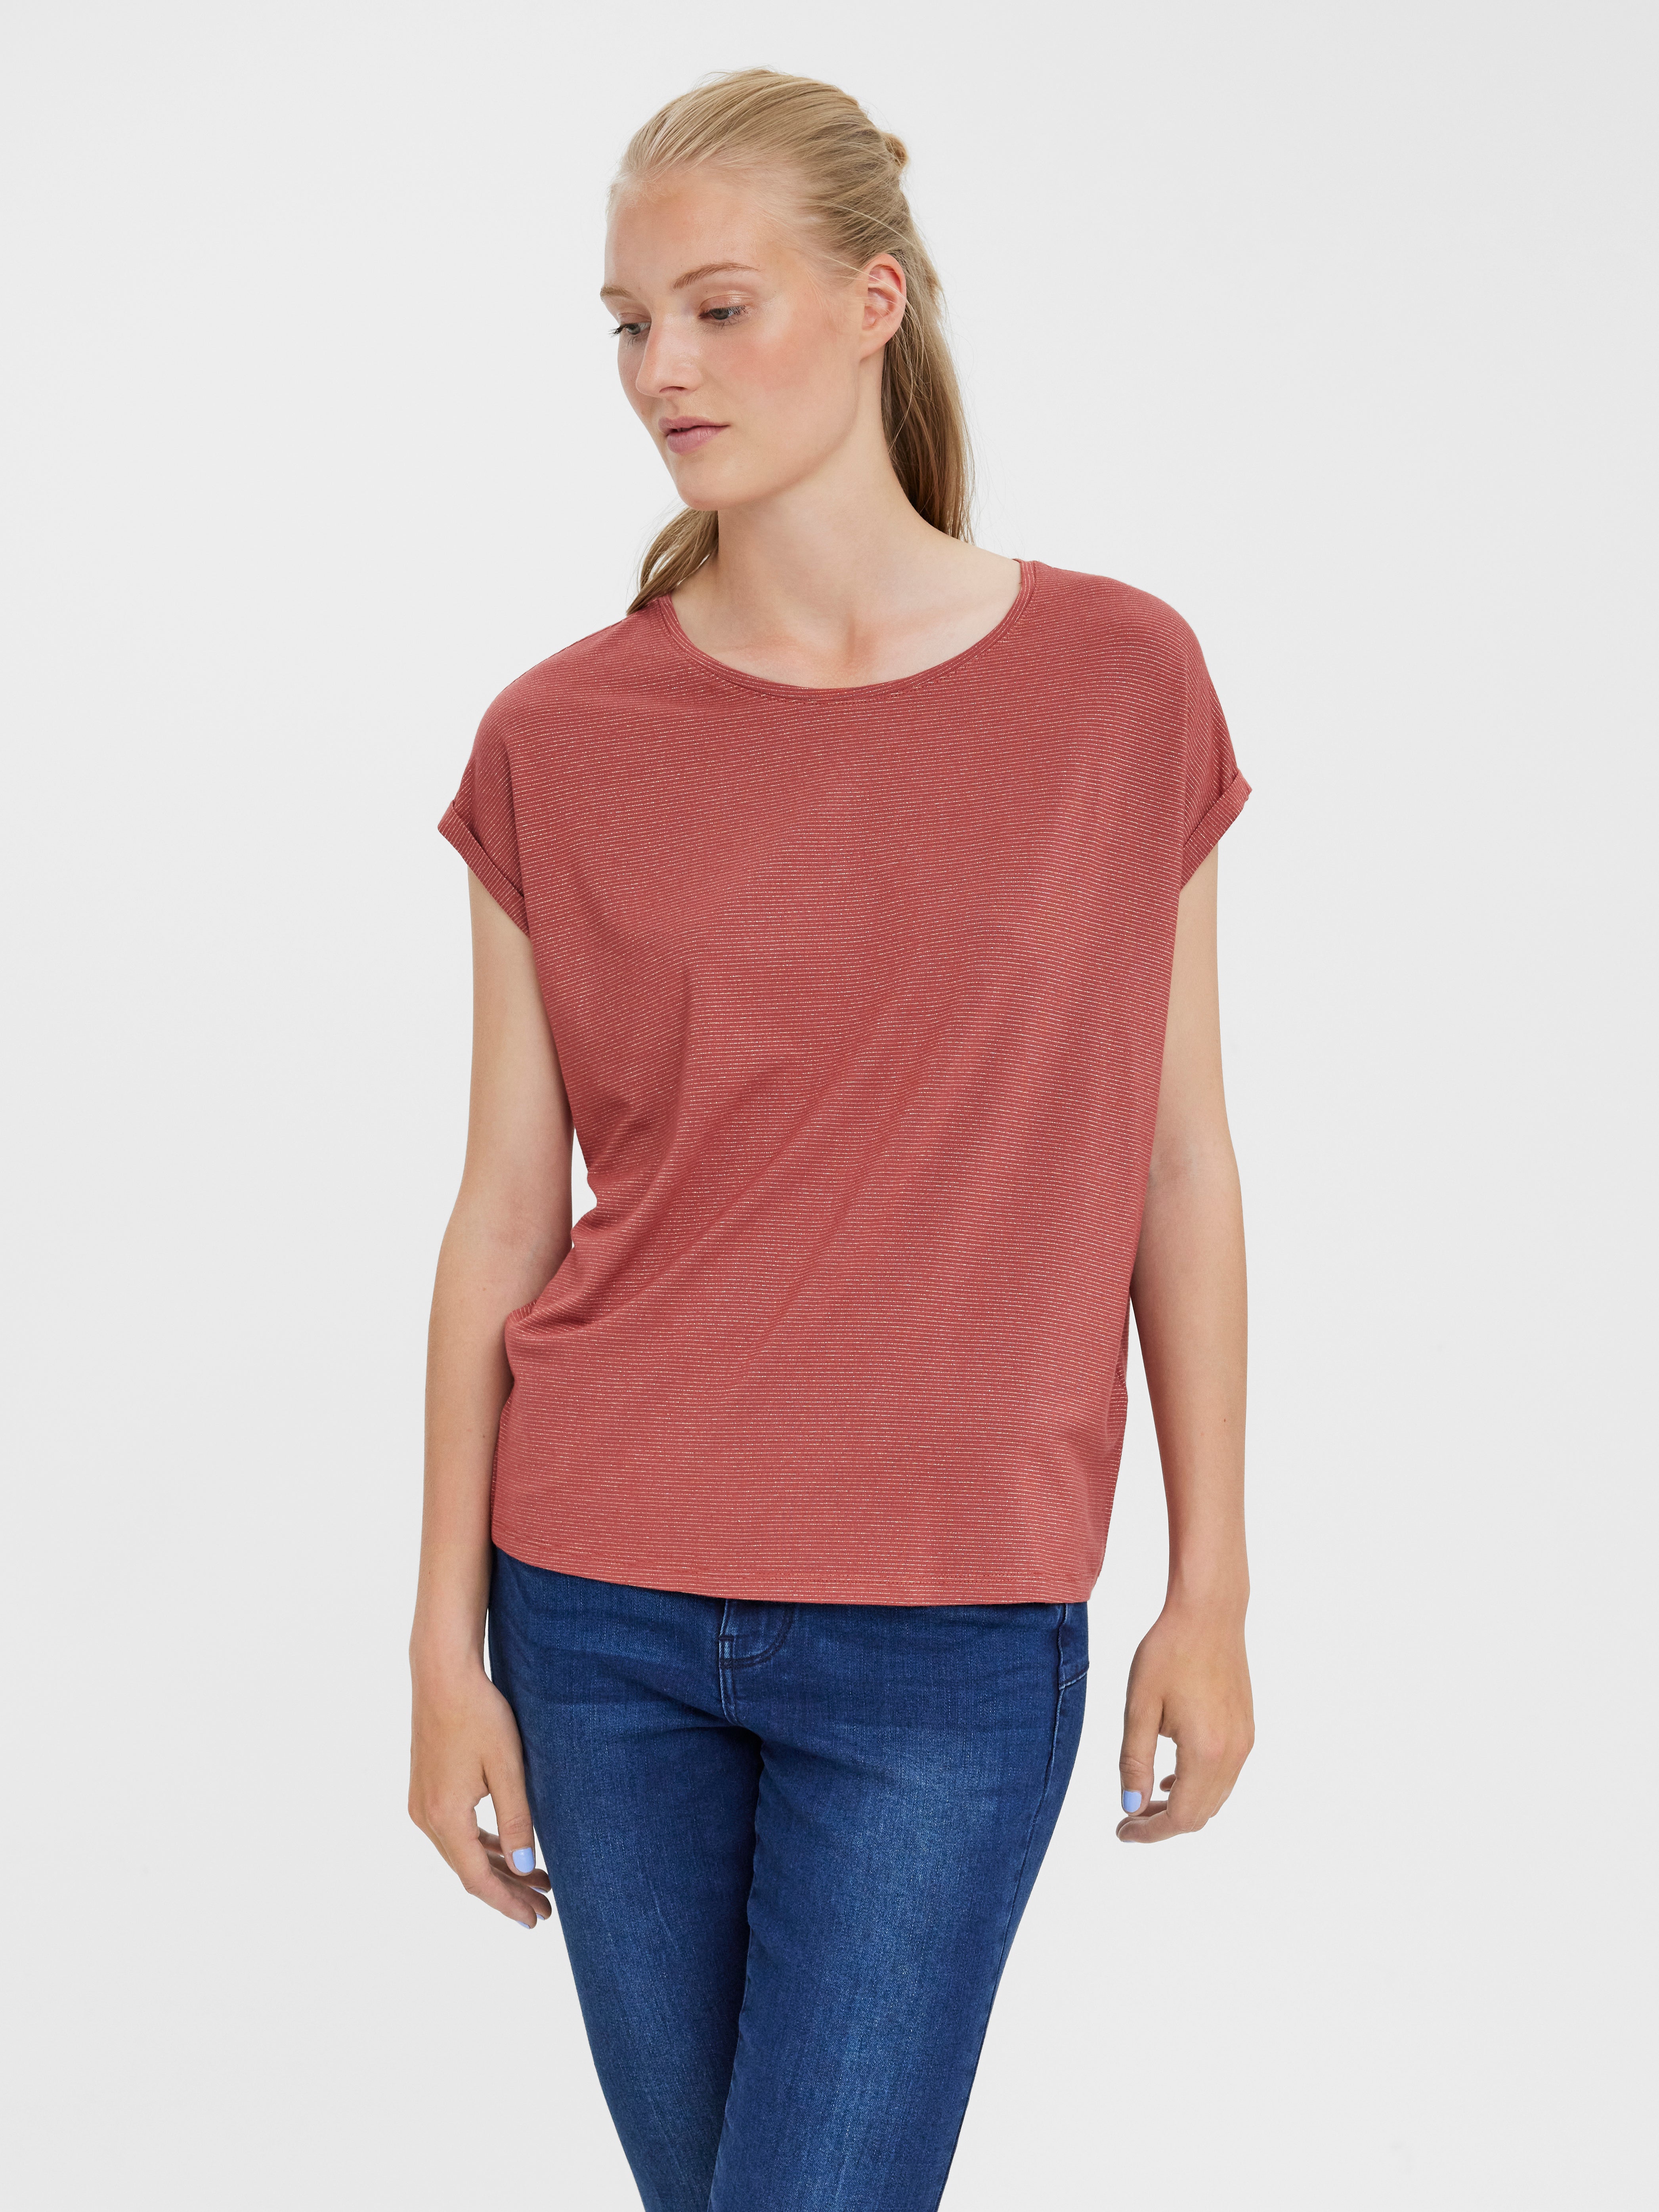 Vero Moda Boothalsshirt rood gestippeld elegant Mode Shirts Bootshalsshirts 